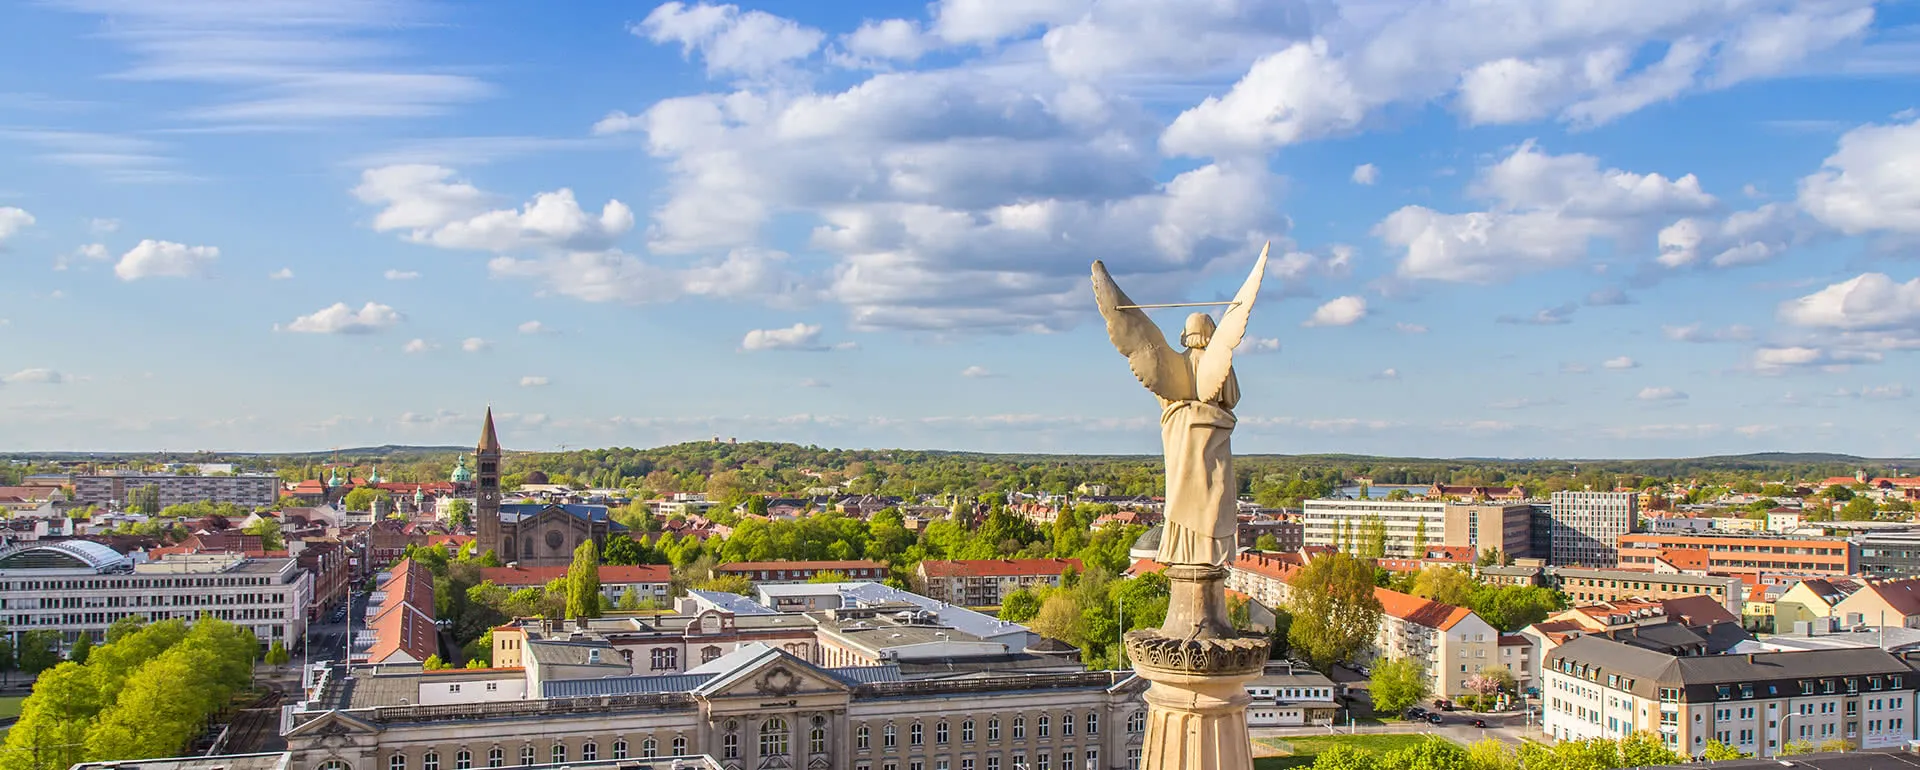 Potsdam panorama image